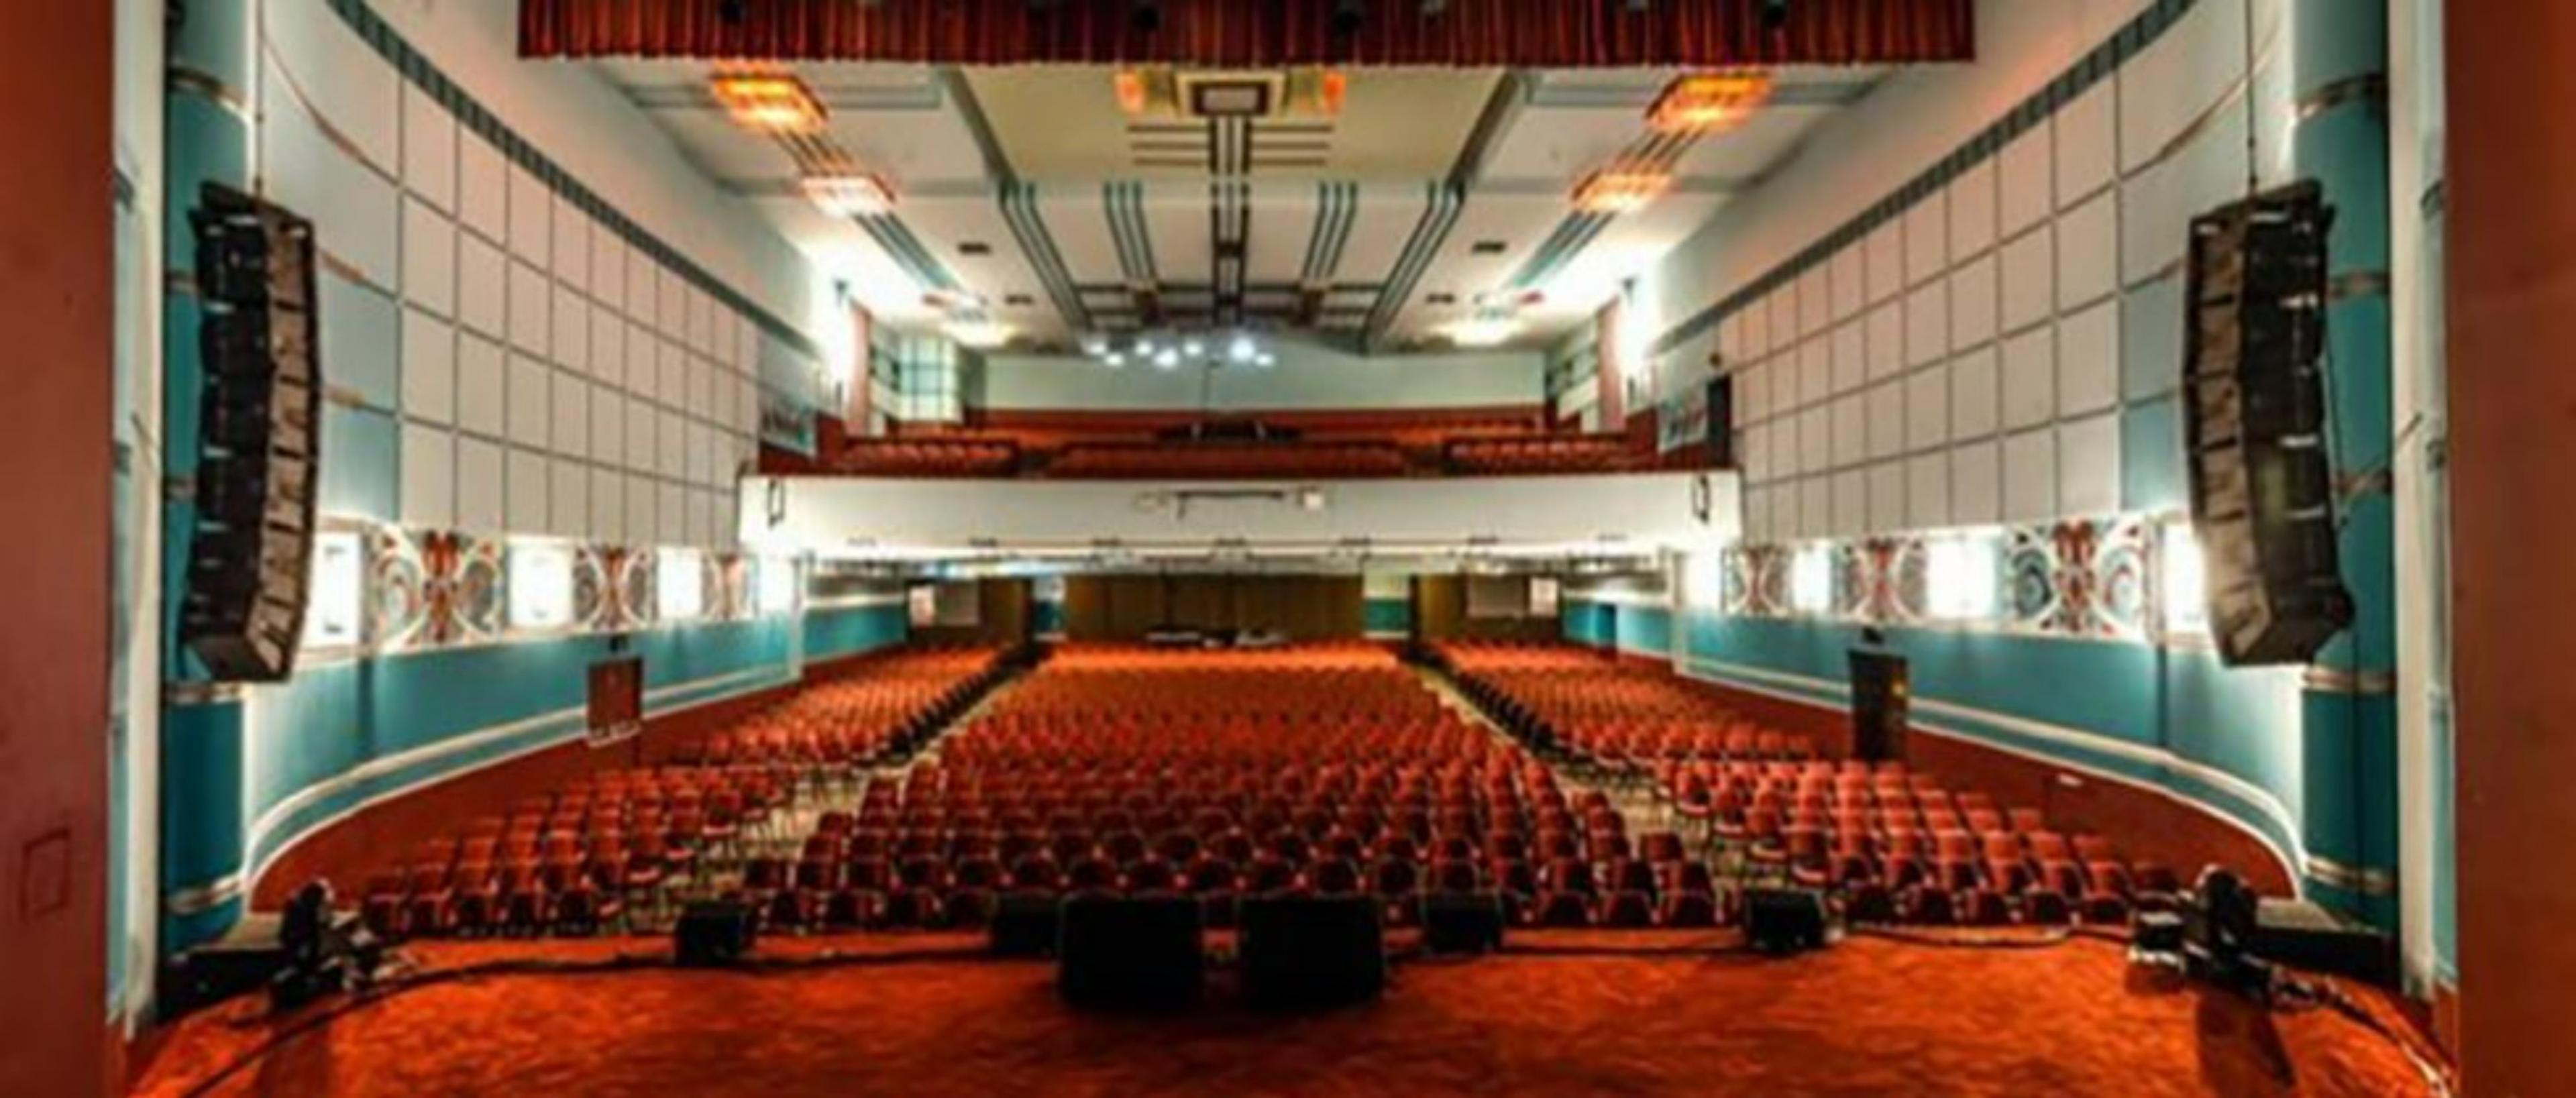 Astor Theatre Perth